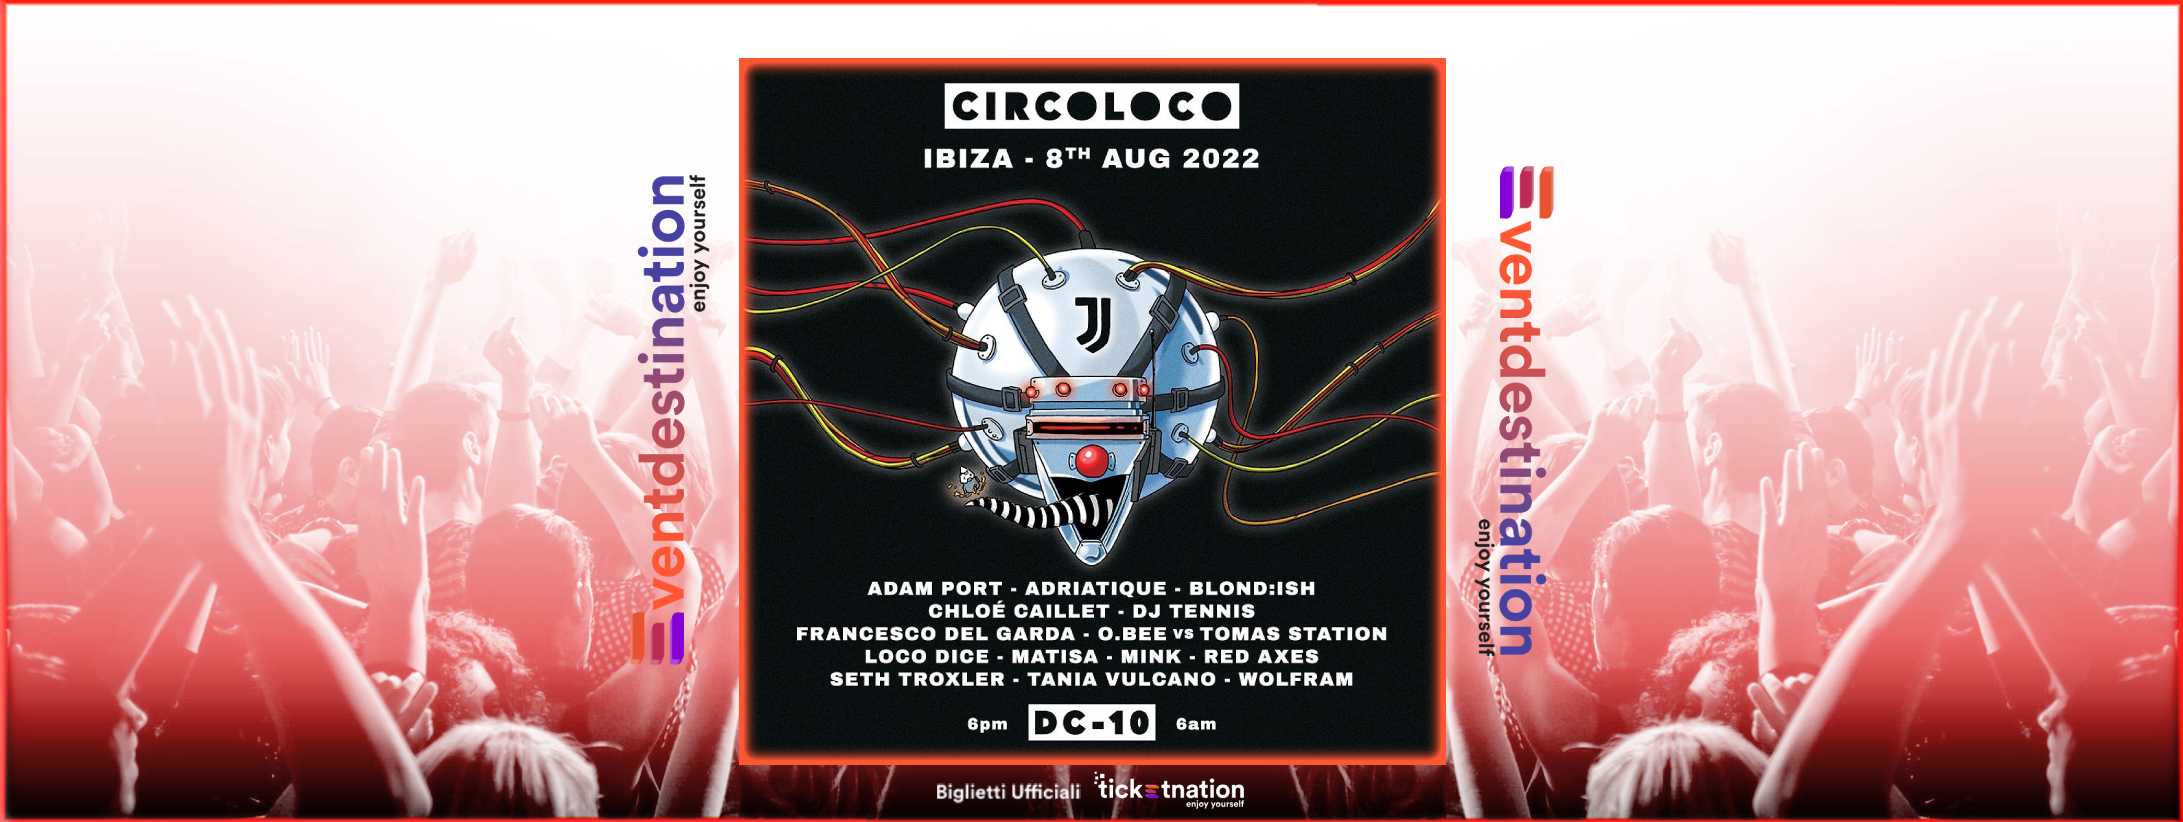 Circoloco @ DC-10 Ibiza 8 Agosto 2022